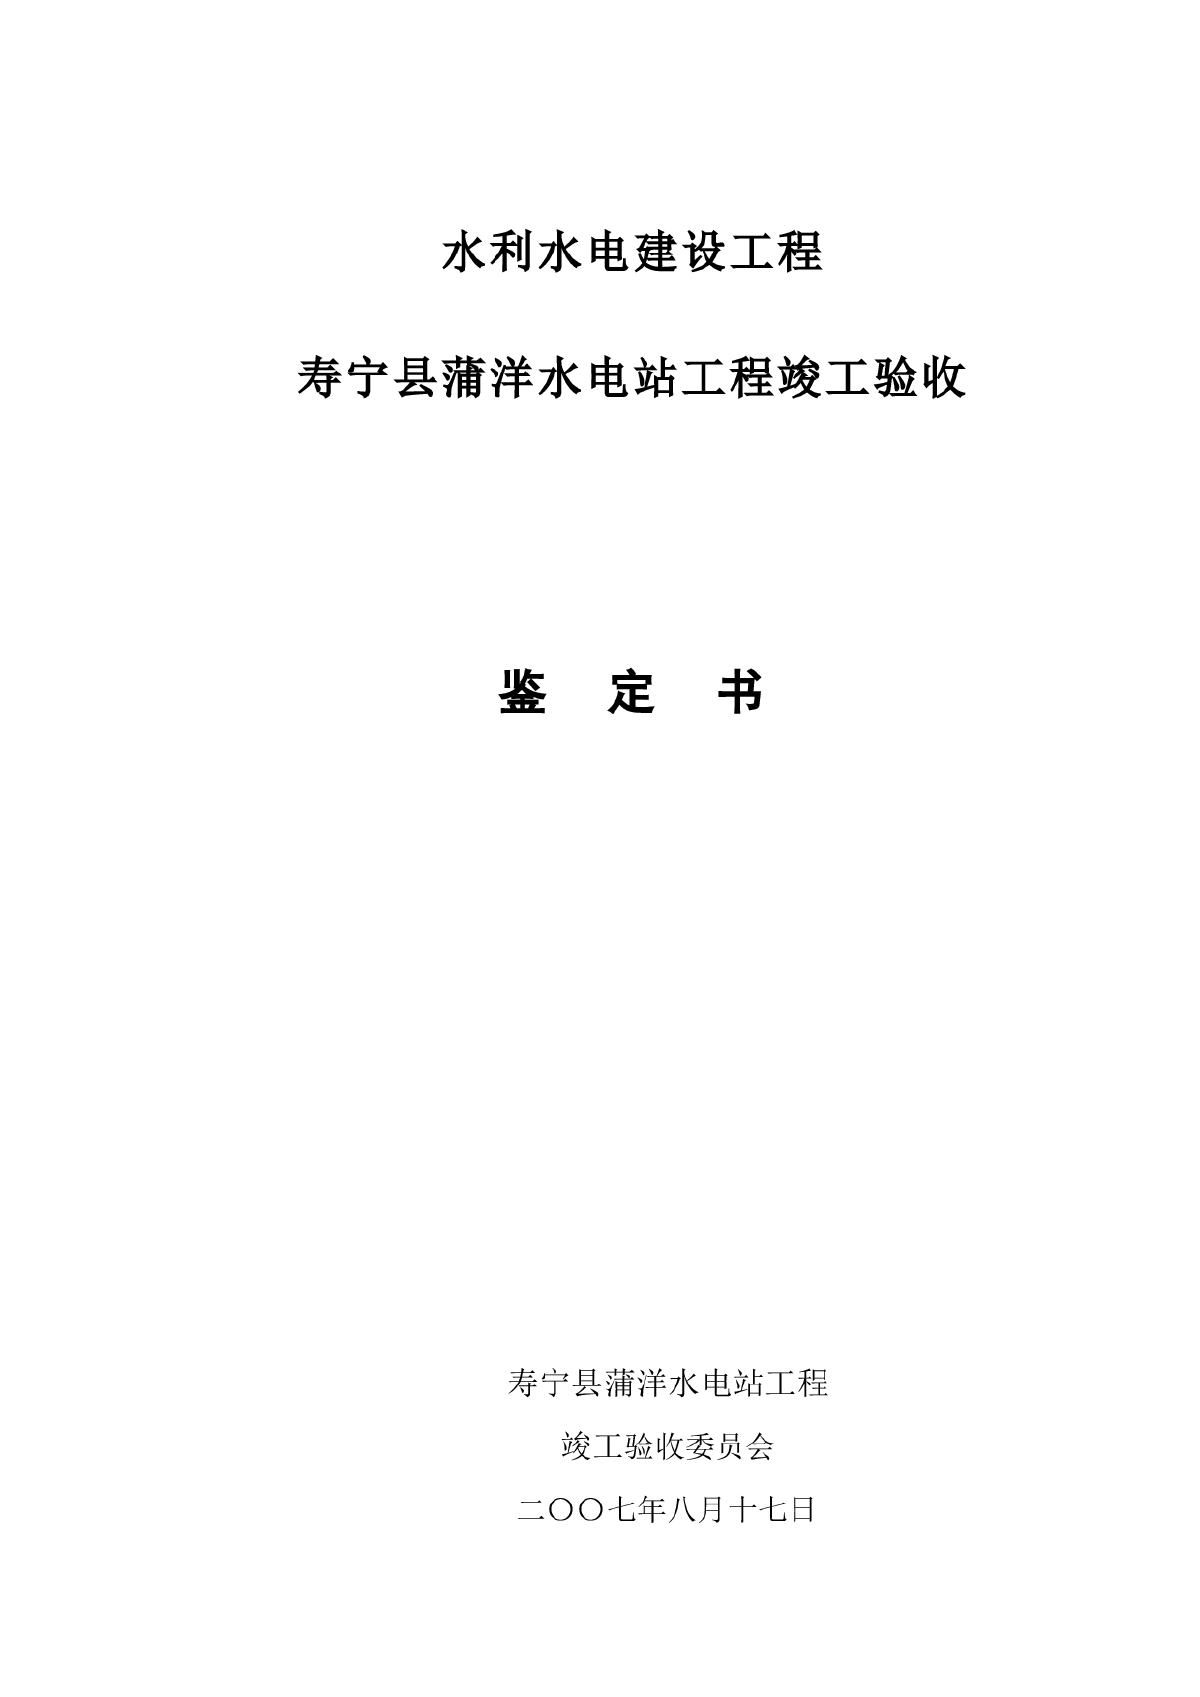 寿宁县蒲洋水电站工程竣工验收鉴定书